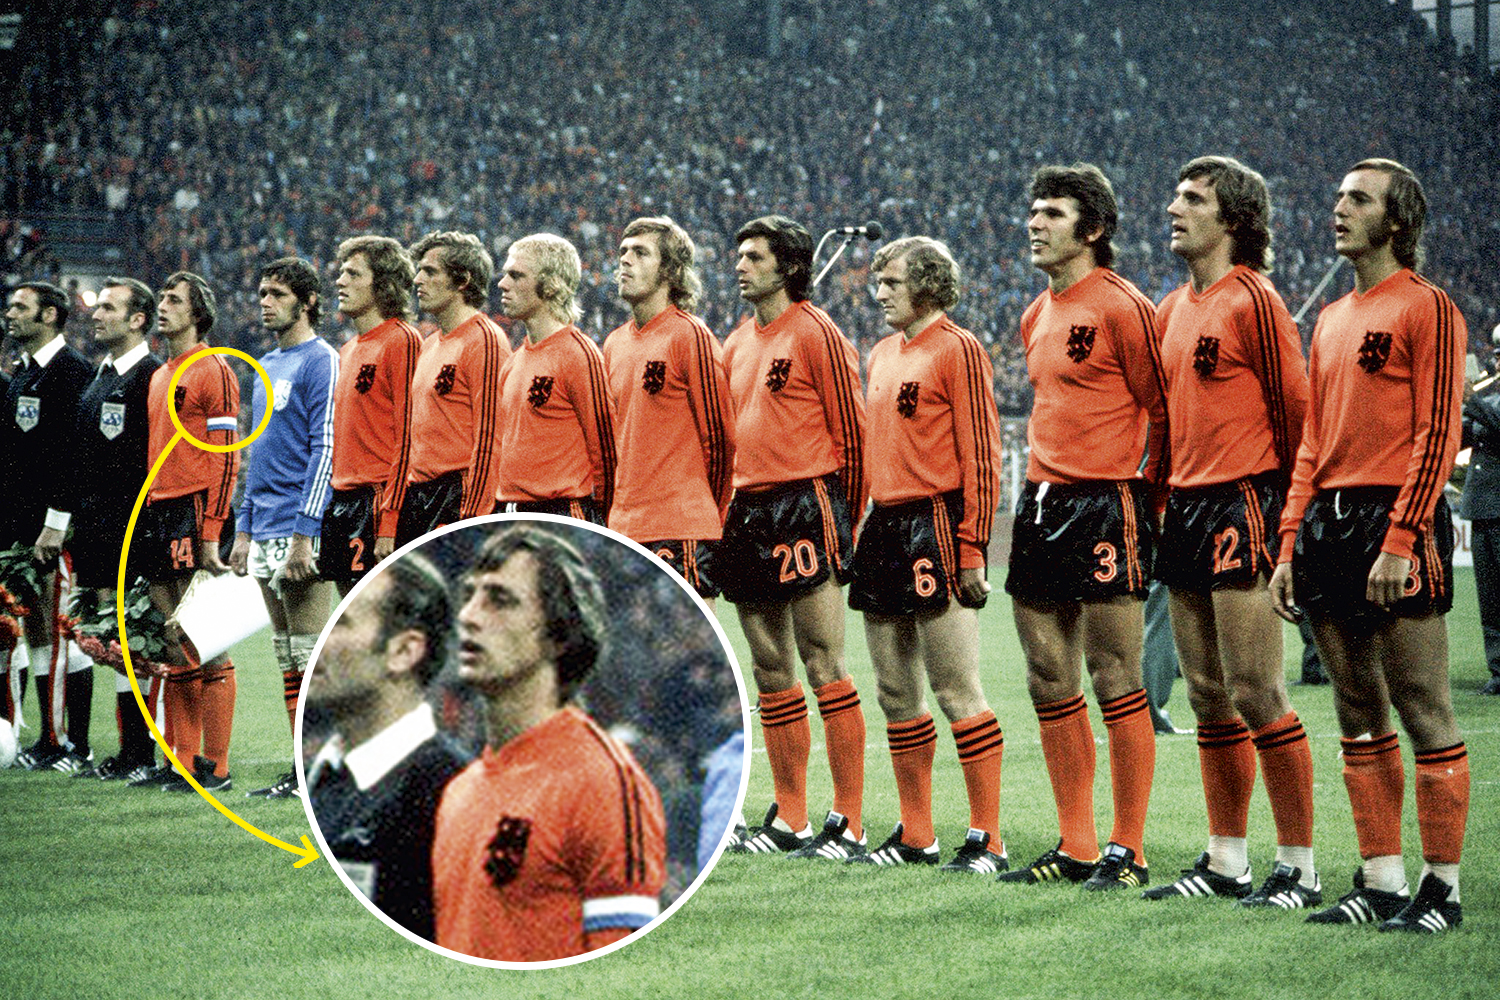 REBELDIA - Johan Cruyff, o gênio holandês, ousou arrancar uma das três faixas da Adidas do uniforme em 1974: eram outros tempos -